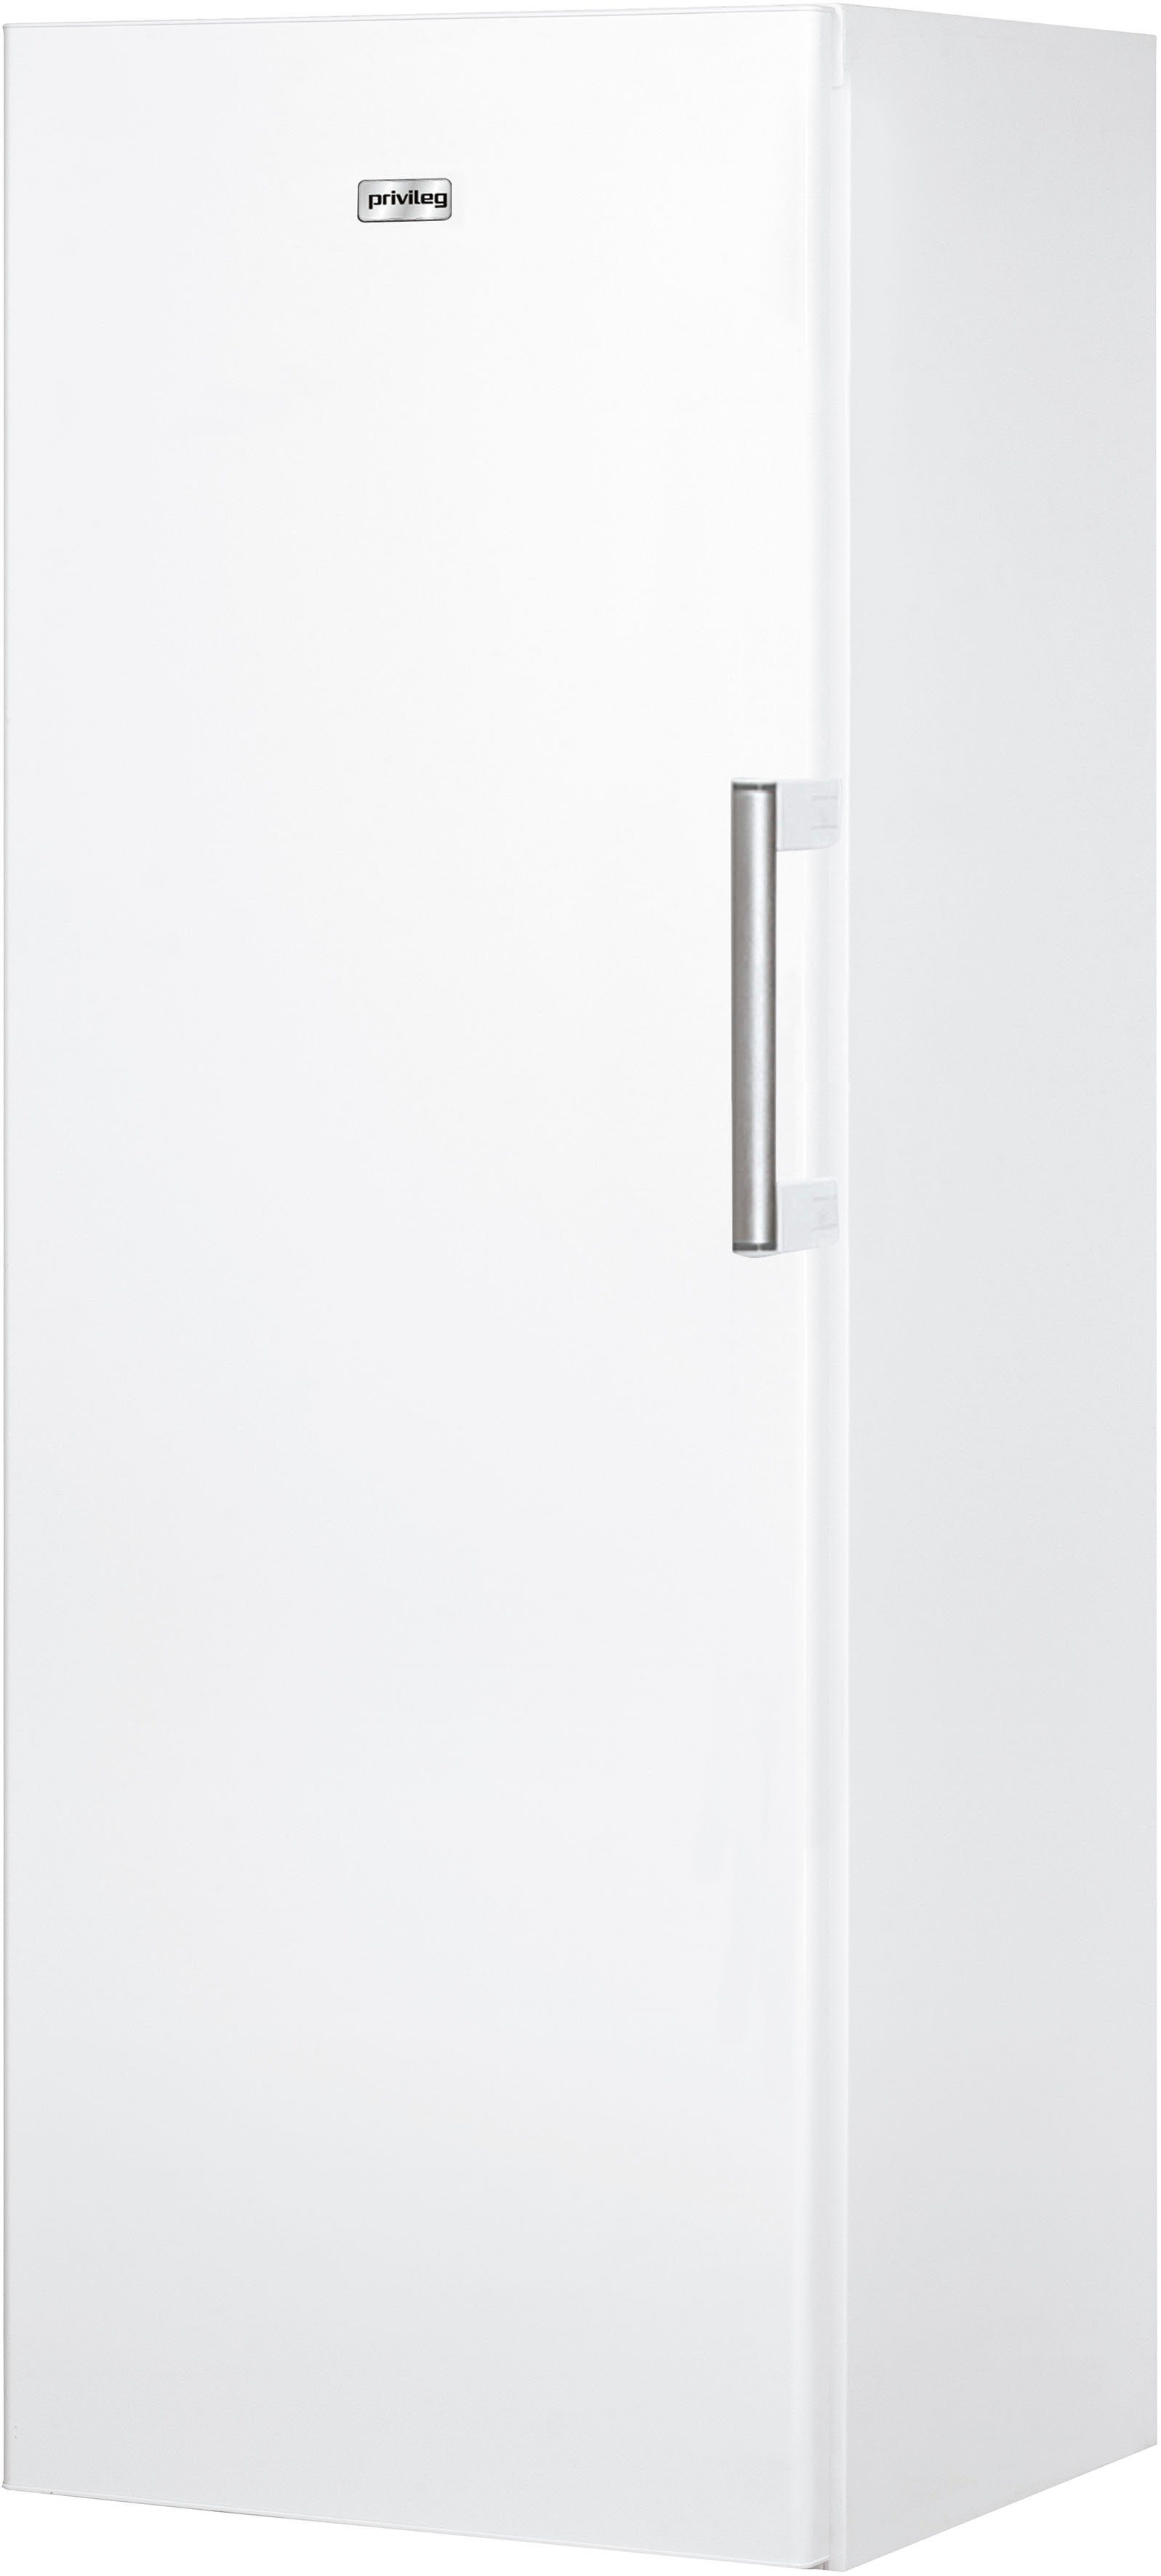 Privileg Gefrierschrank PFVN 266 W, 167 cm hoch, 59,5 cm breit online  kaufen | OTTO